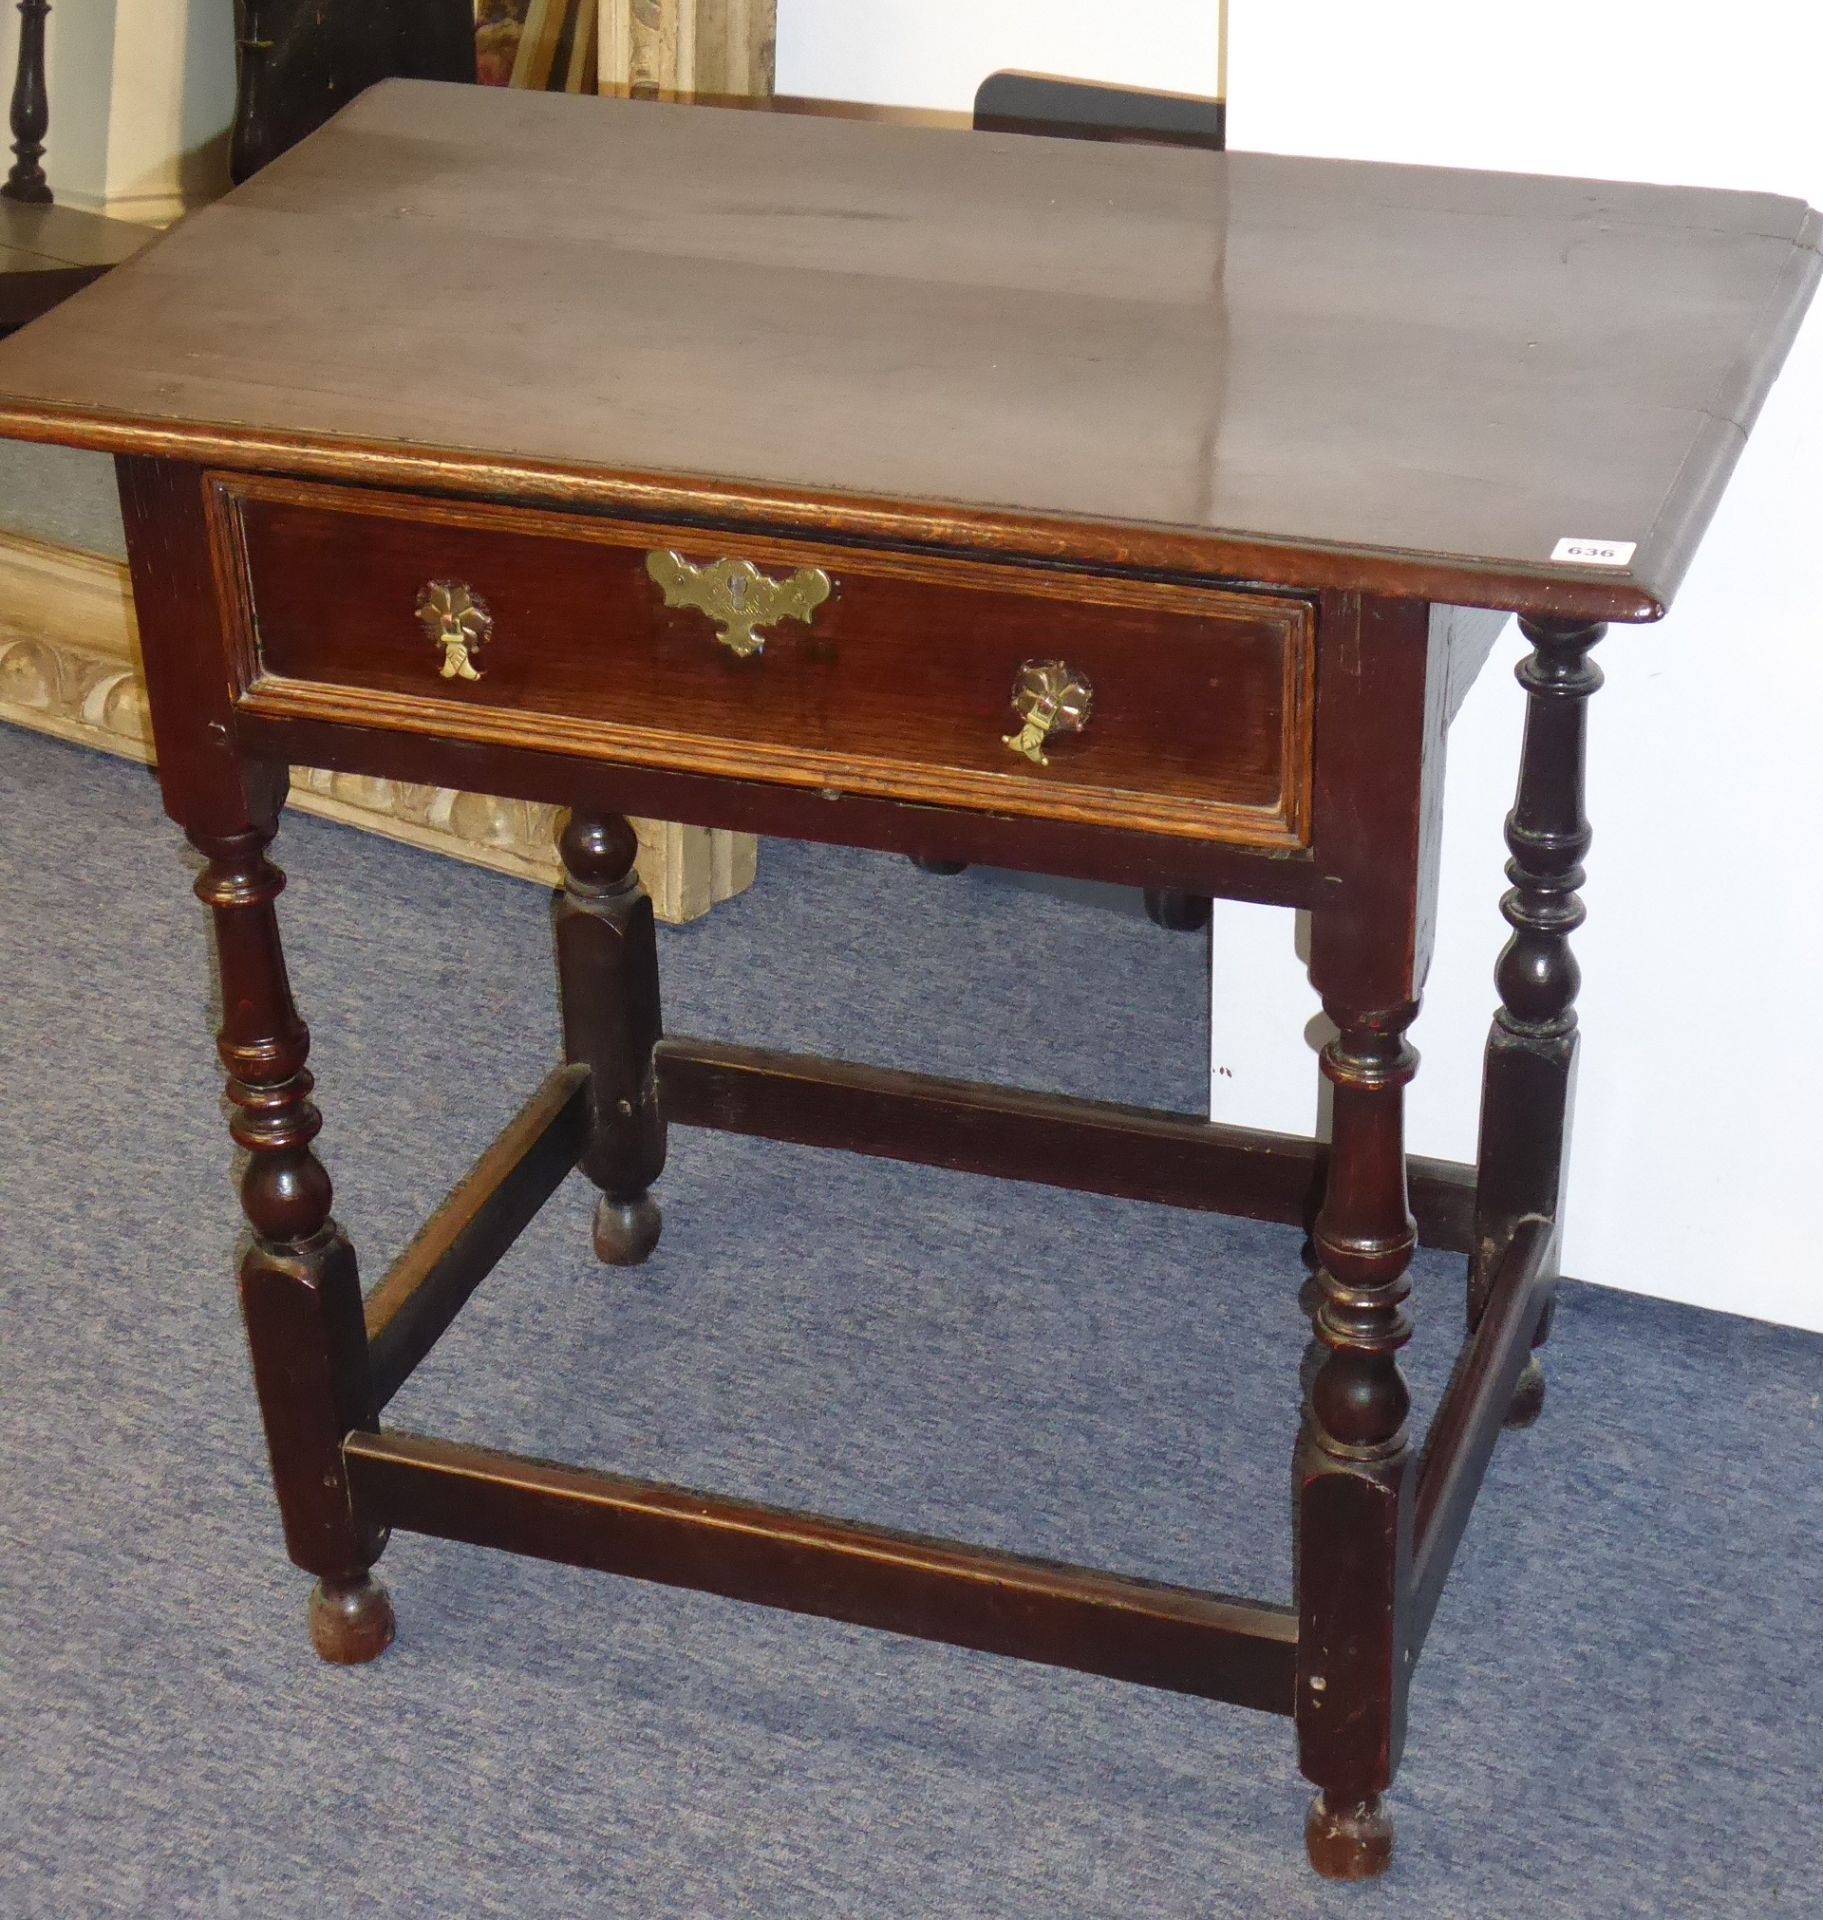 An early-18th century oak side table;